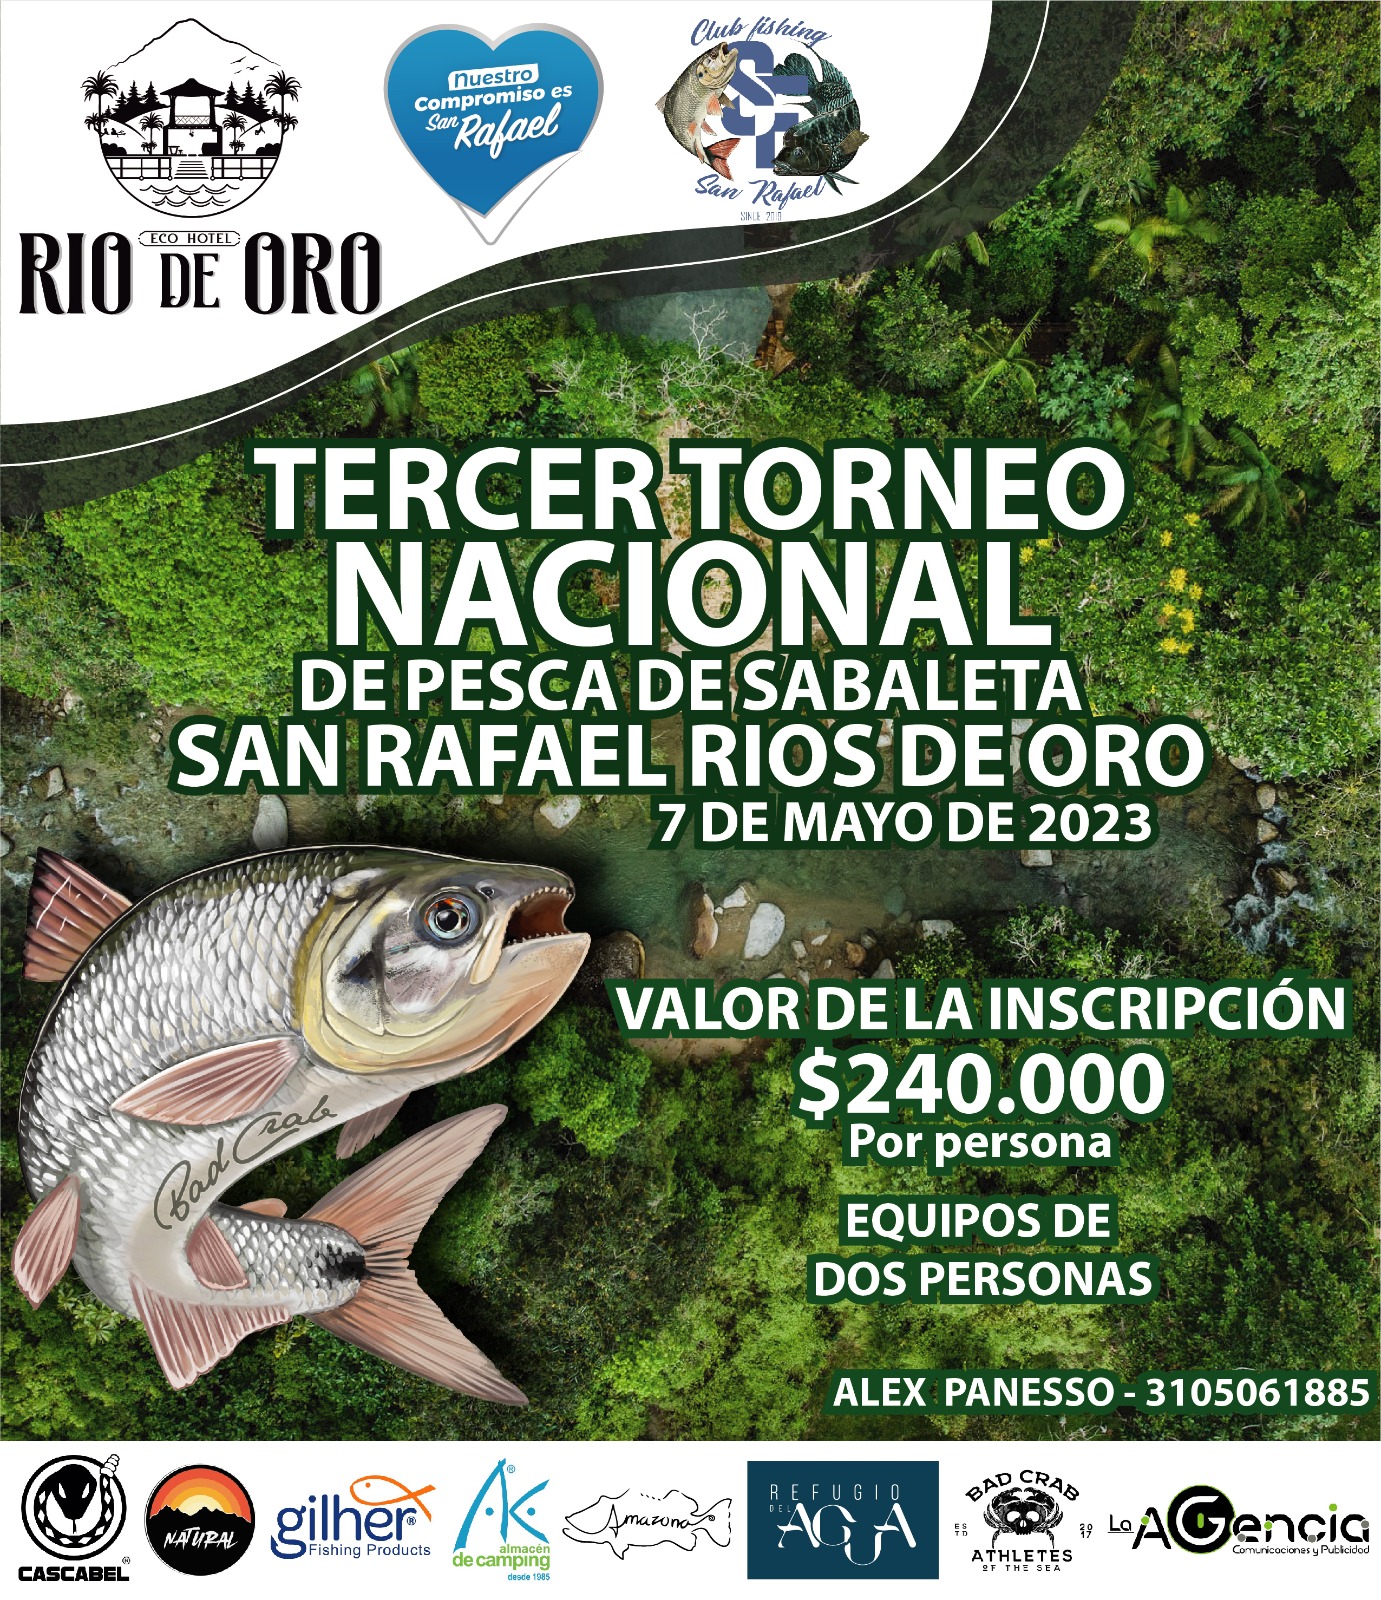 Concurso de Pesca Sabaleta 2023 - San Rafael